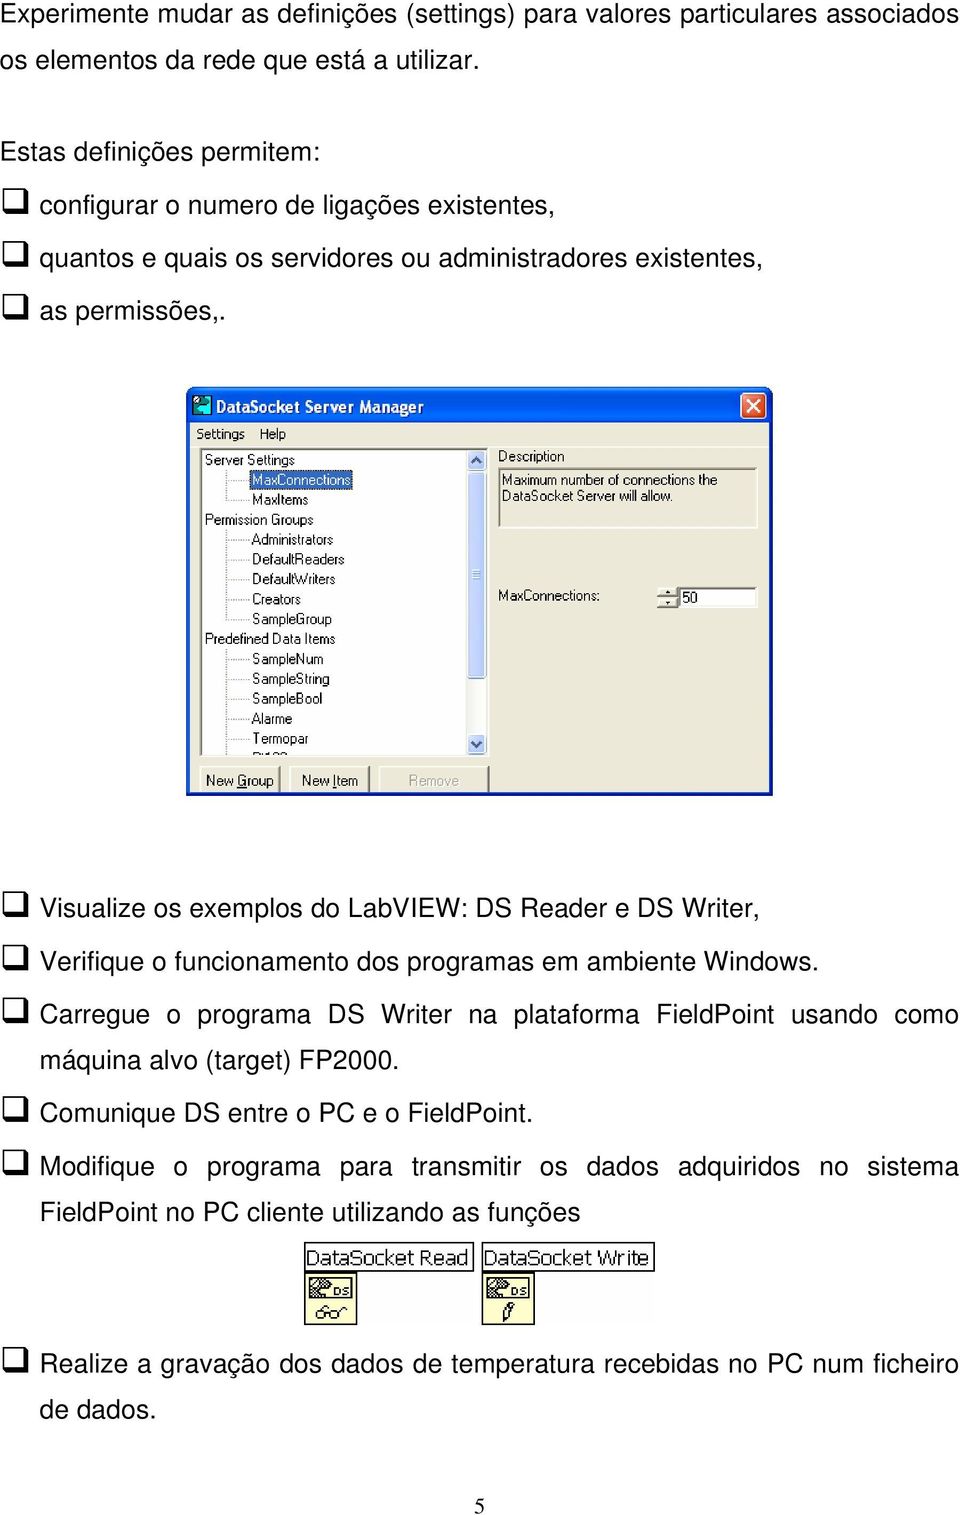 Visualize os exemplos do LabVIEW: DS Reader e DS Writer, Verifique o funcionamento dos programas em ambiente Windows.